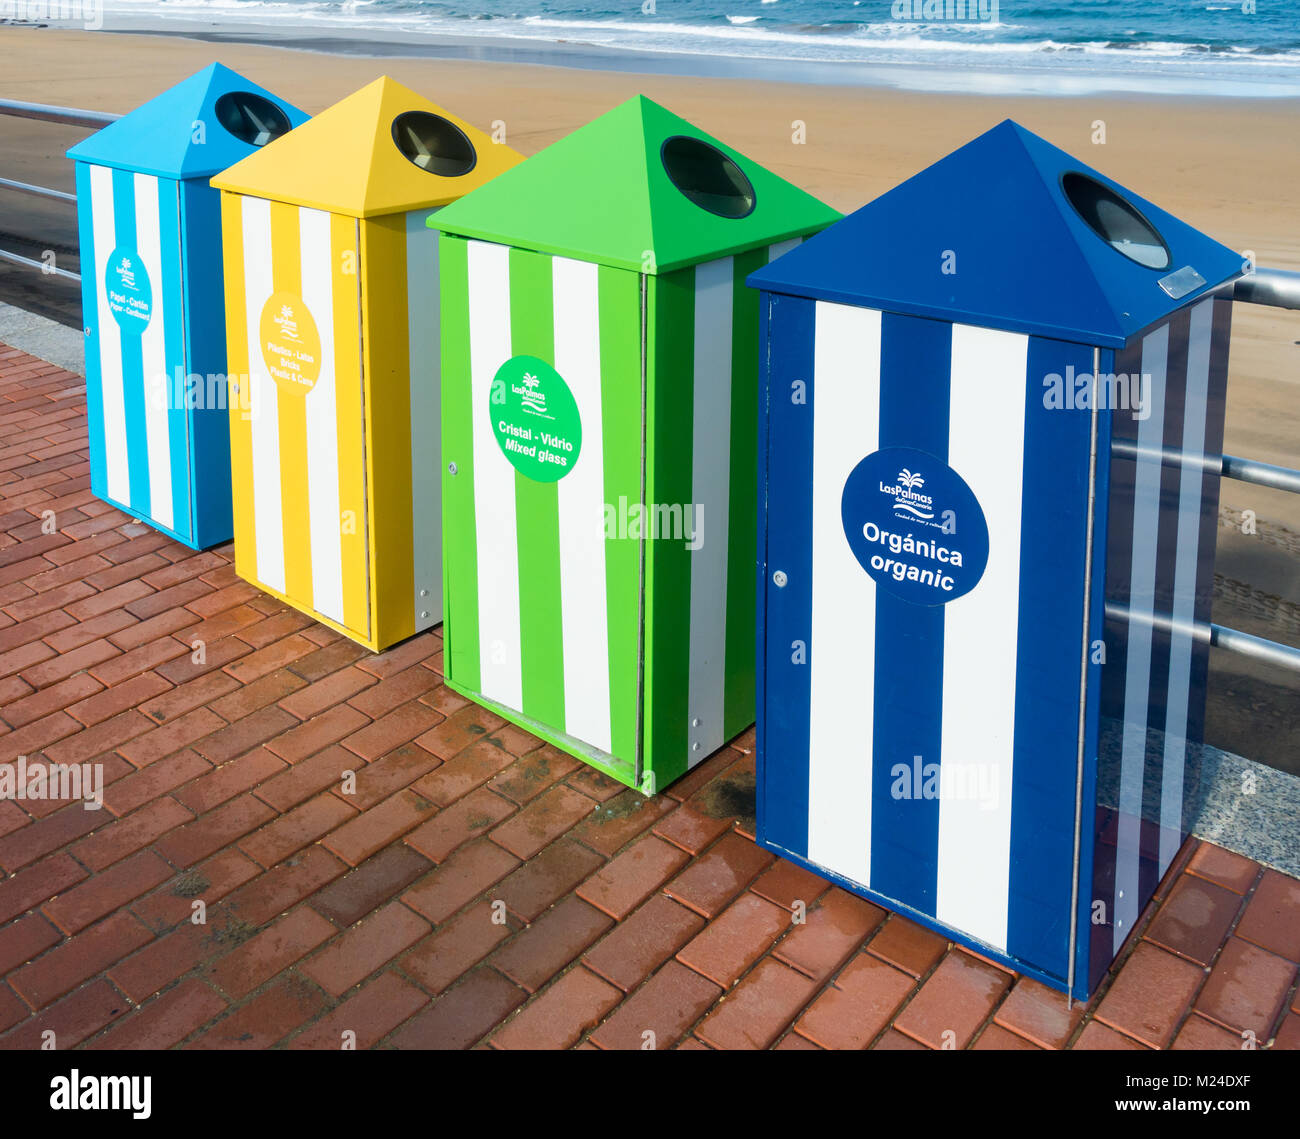 Con codice colore di cassonetti per il riciclaggio della plastica, della carta, organico...sulla spiaggia in Spagna Foto Stock